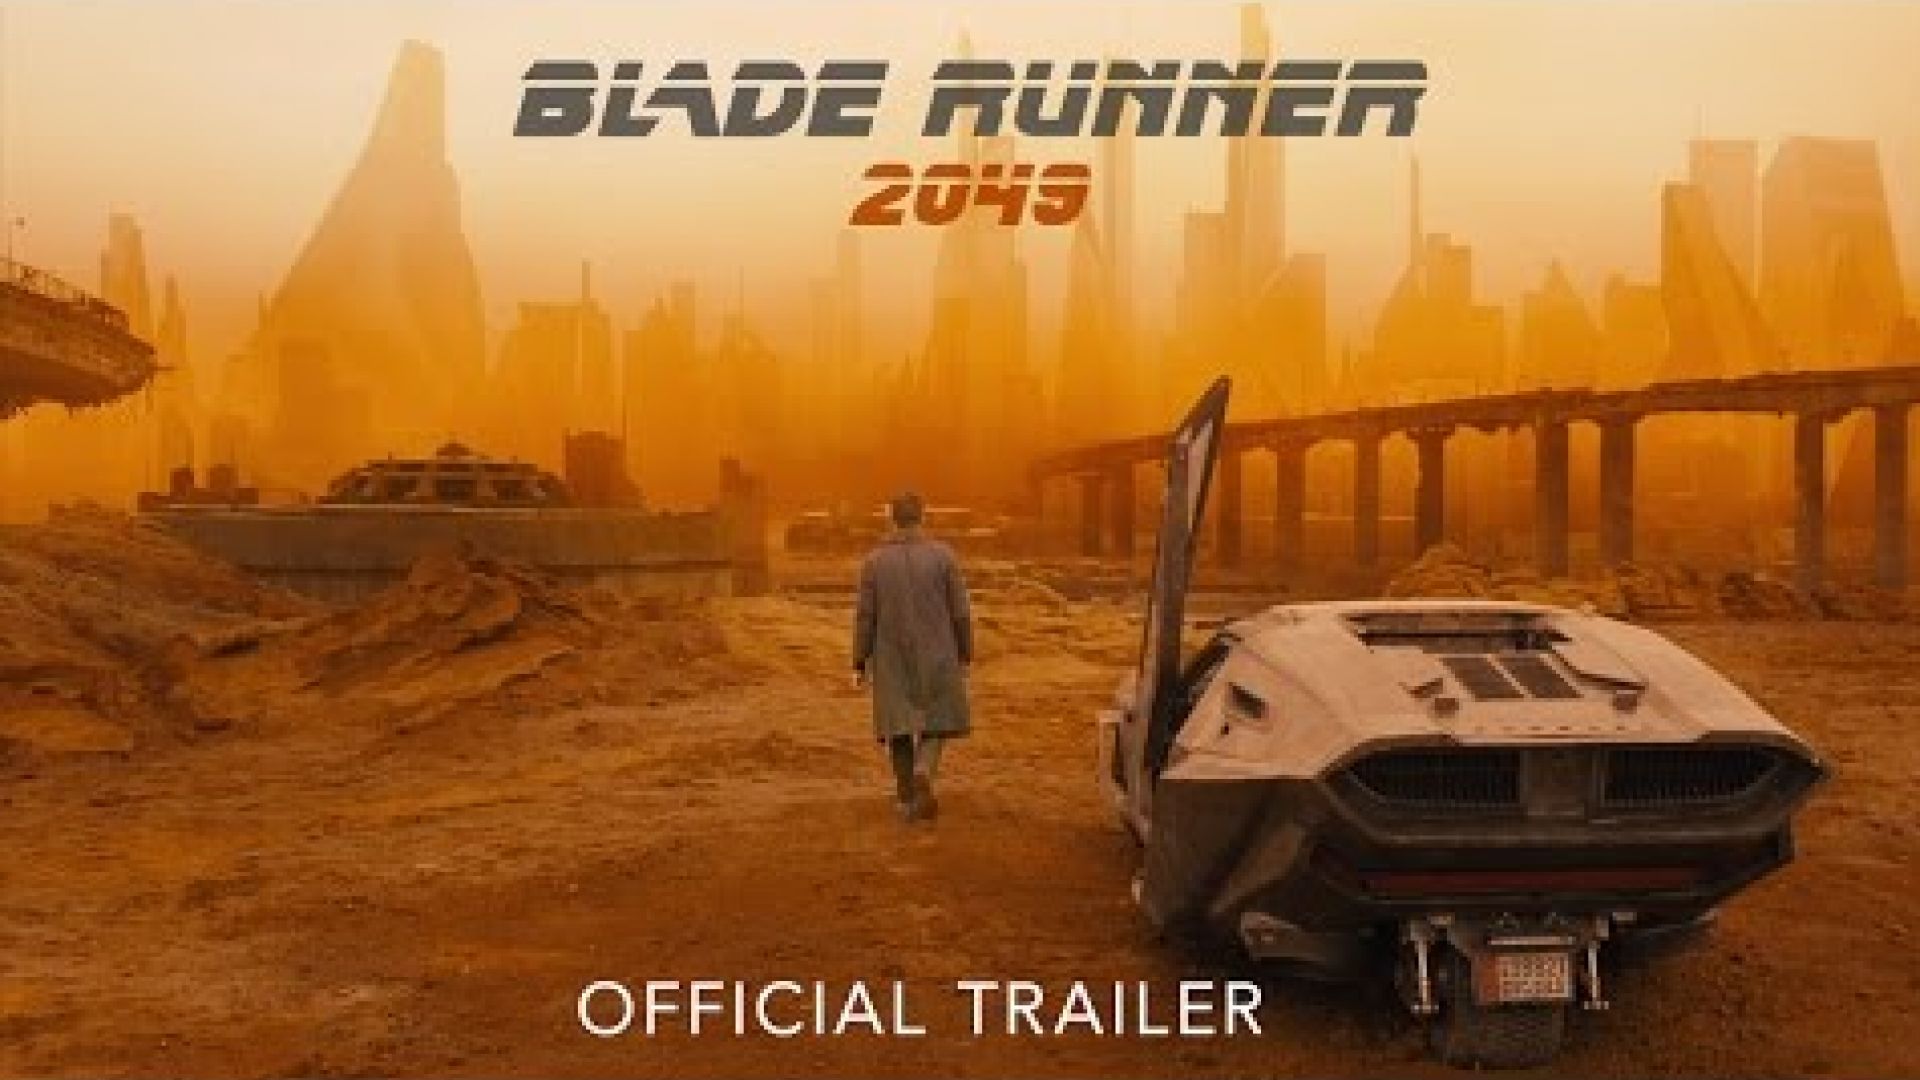 New Trailer for 'Blade Runner 2049'